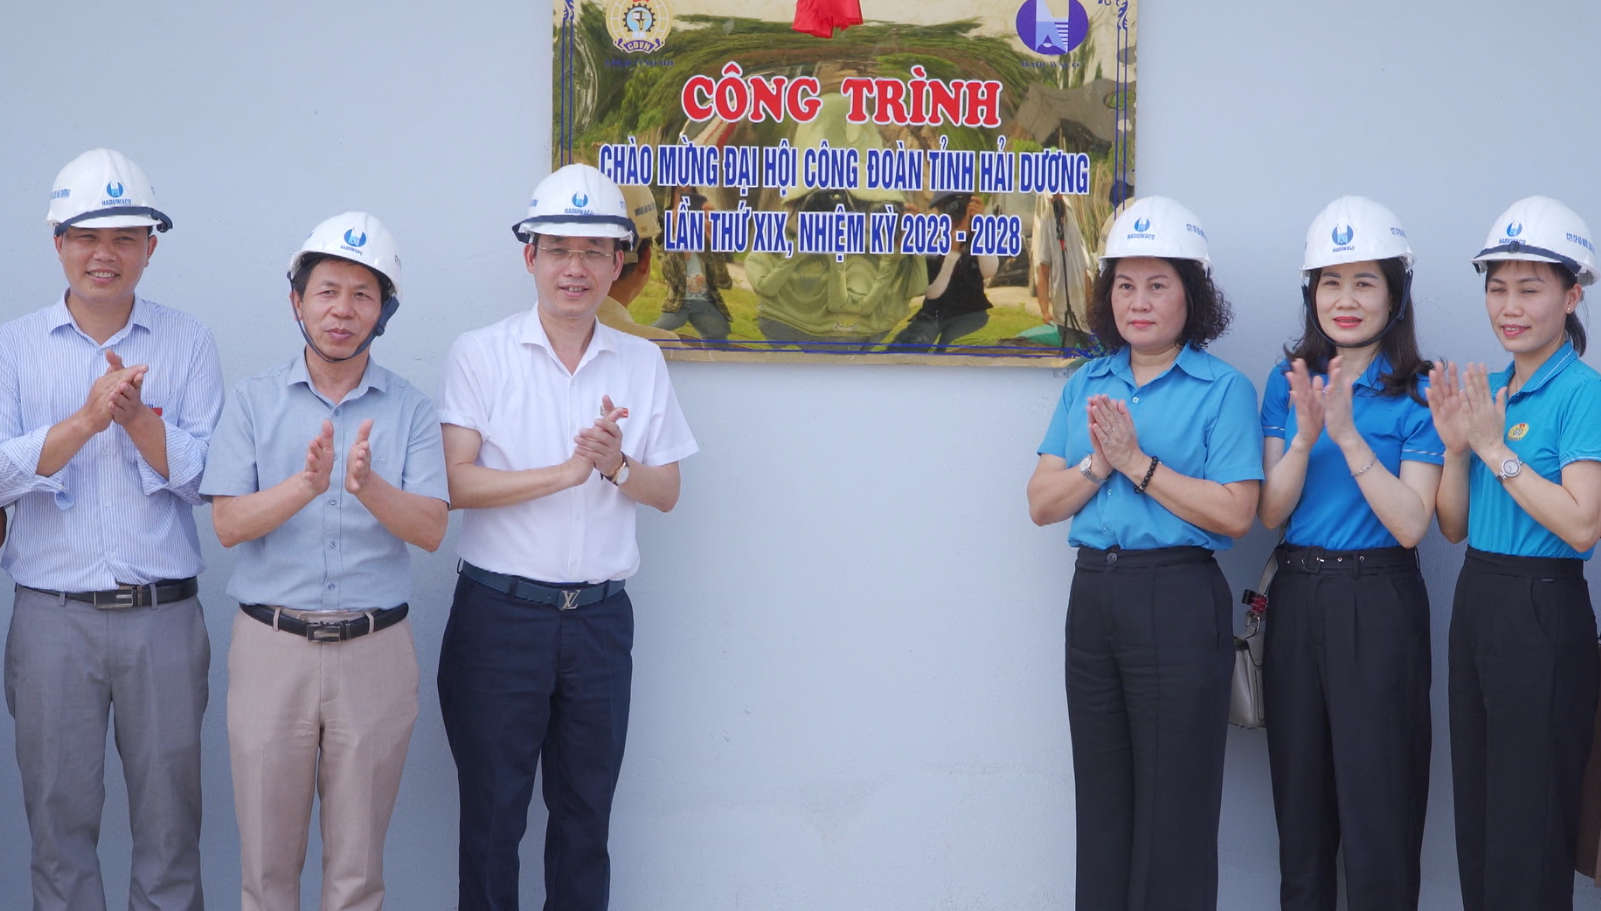 Nhiều công trình chào mừng Đại hội Công đoàn tỉnh Hải Dương